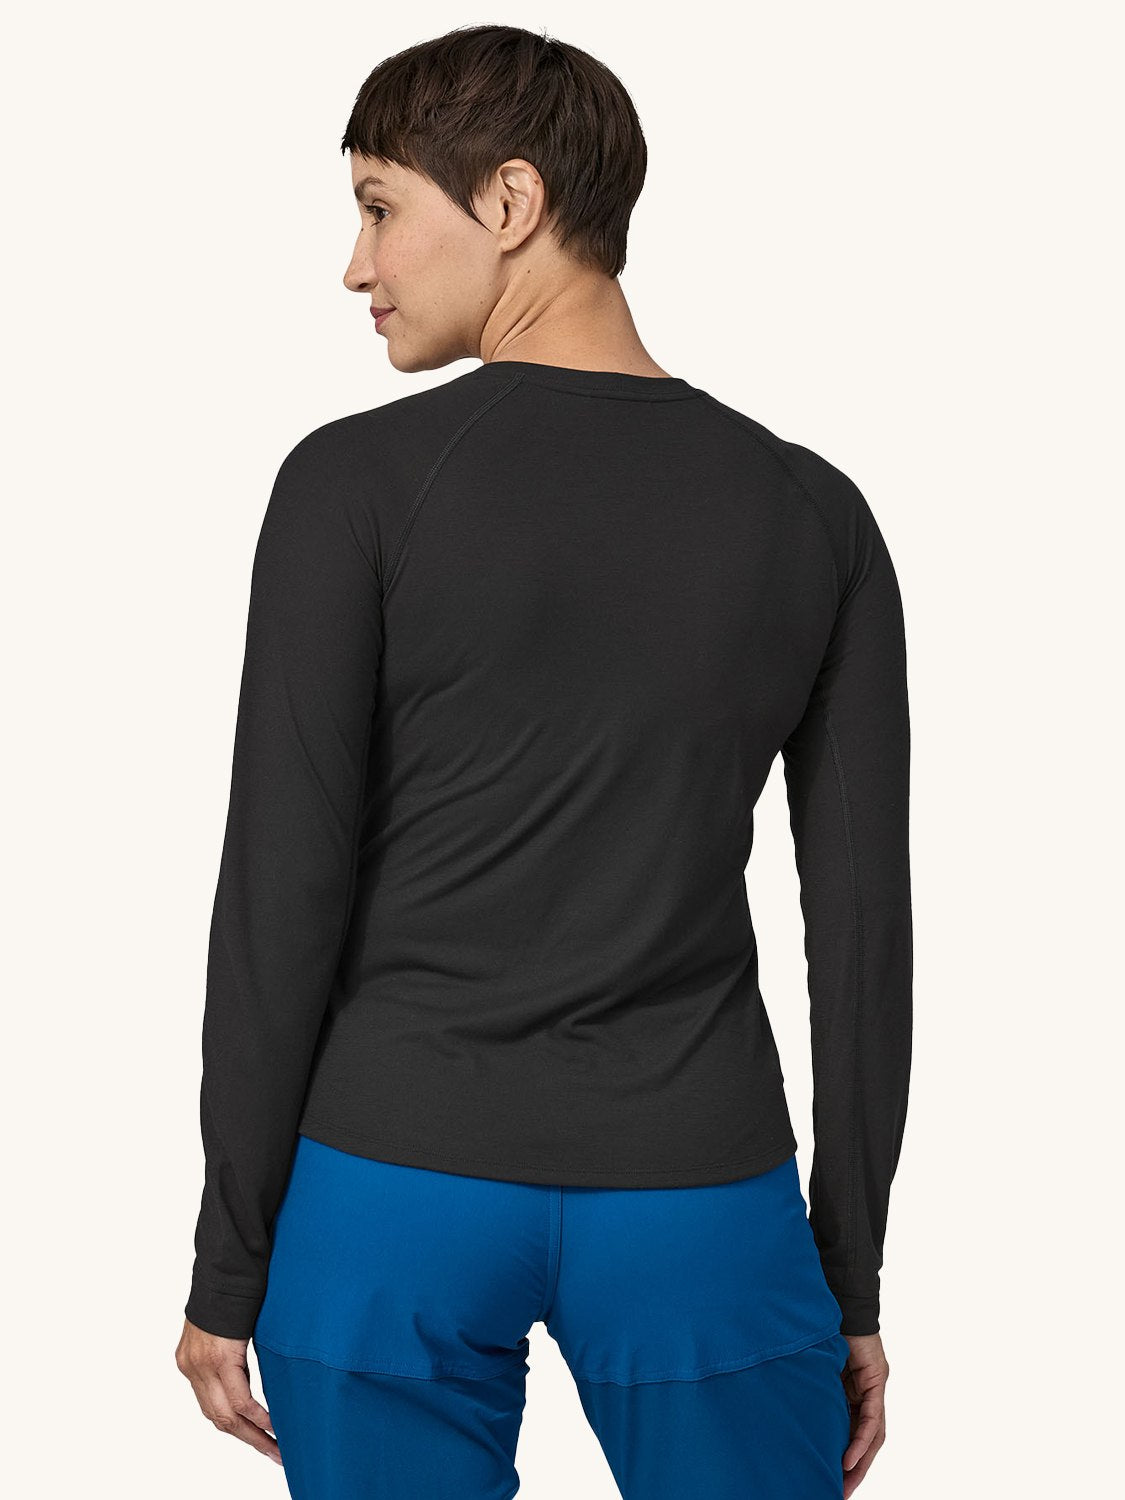 Women's Long-Sleeved Capilene® Cool Trail Shirt